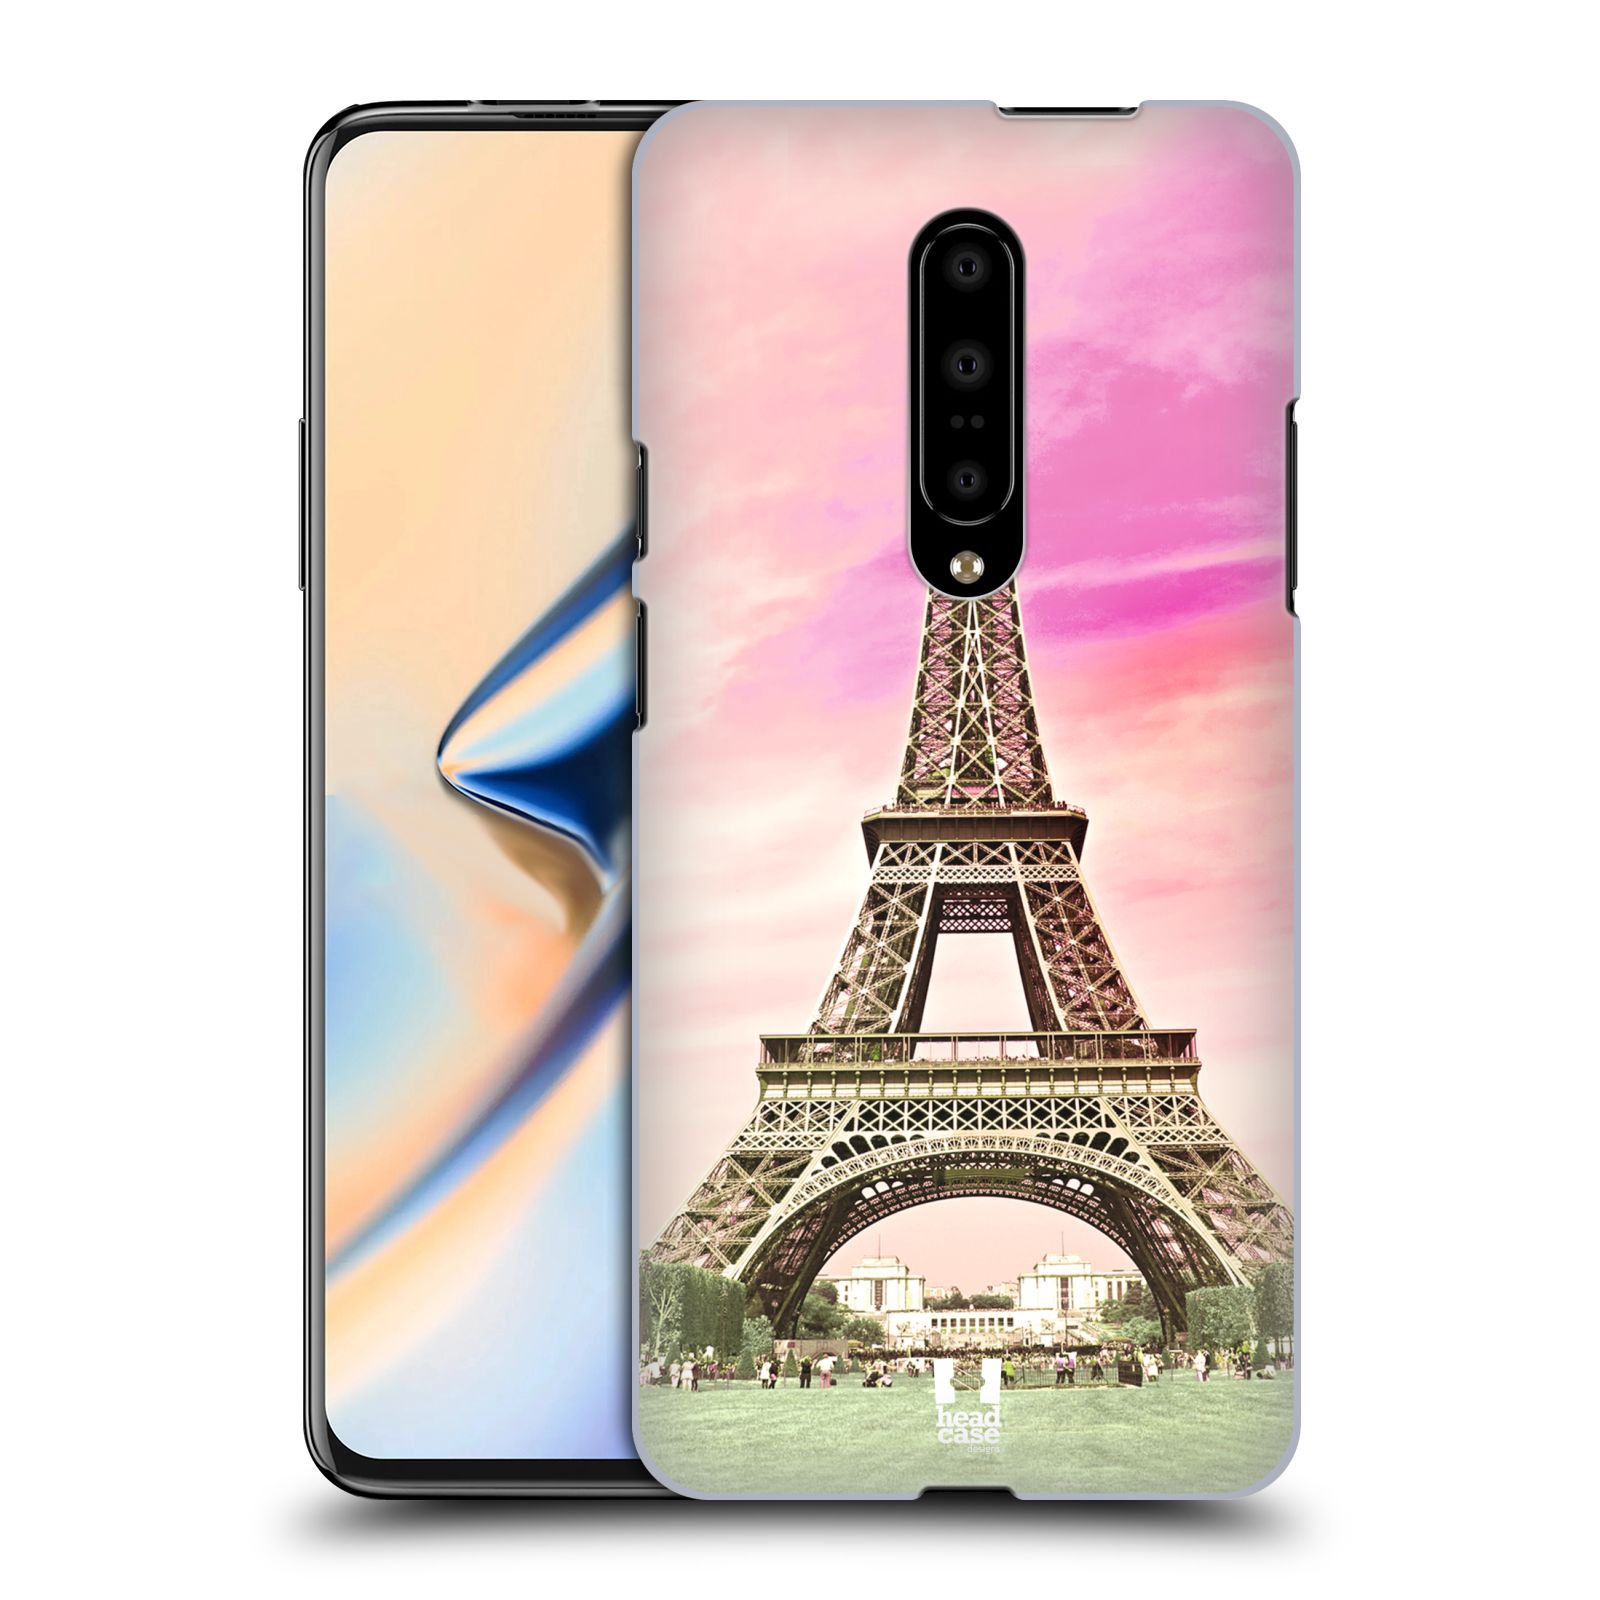 Pouzdro na mobil OnePlus 7 - HEAD CASE - historická místa Eiffelova věž Paříž